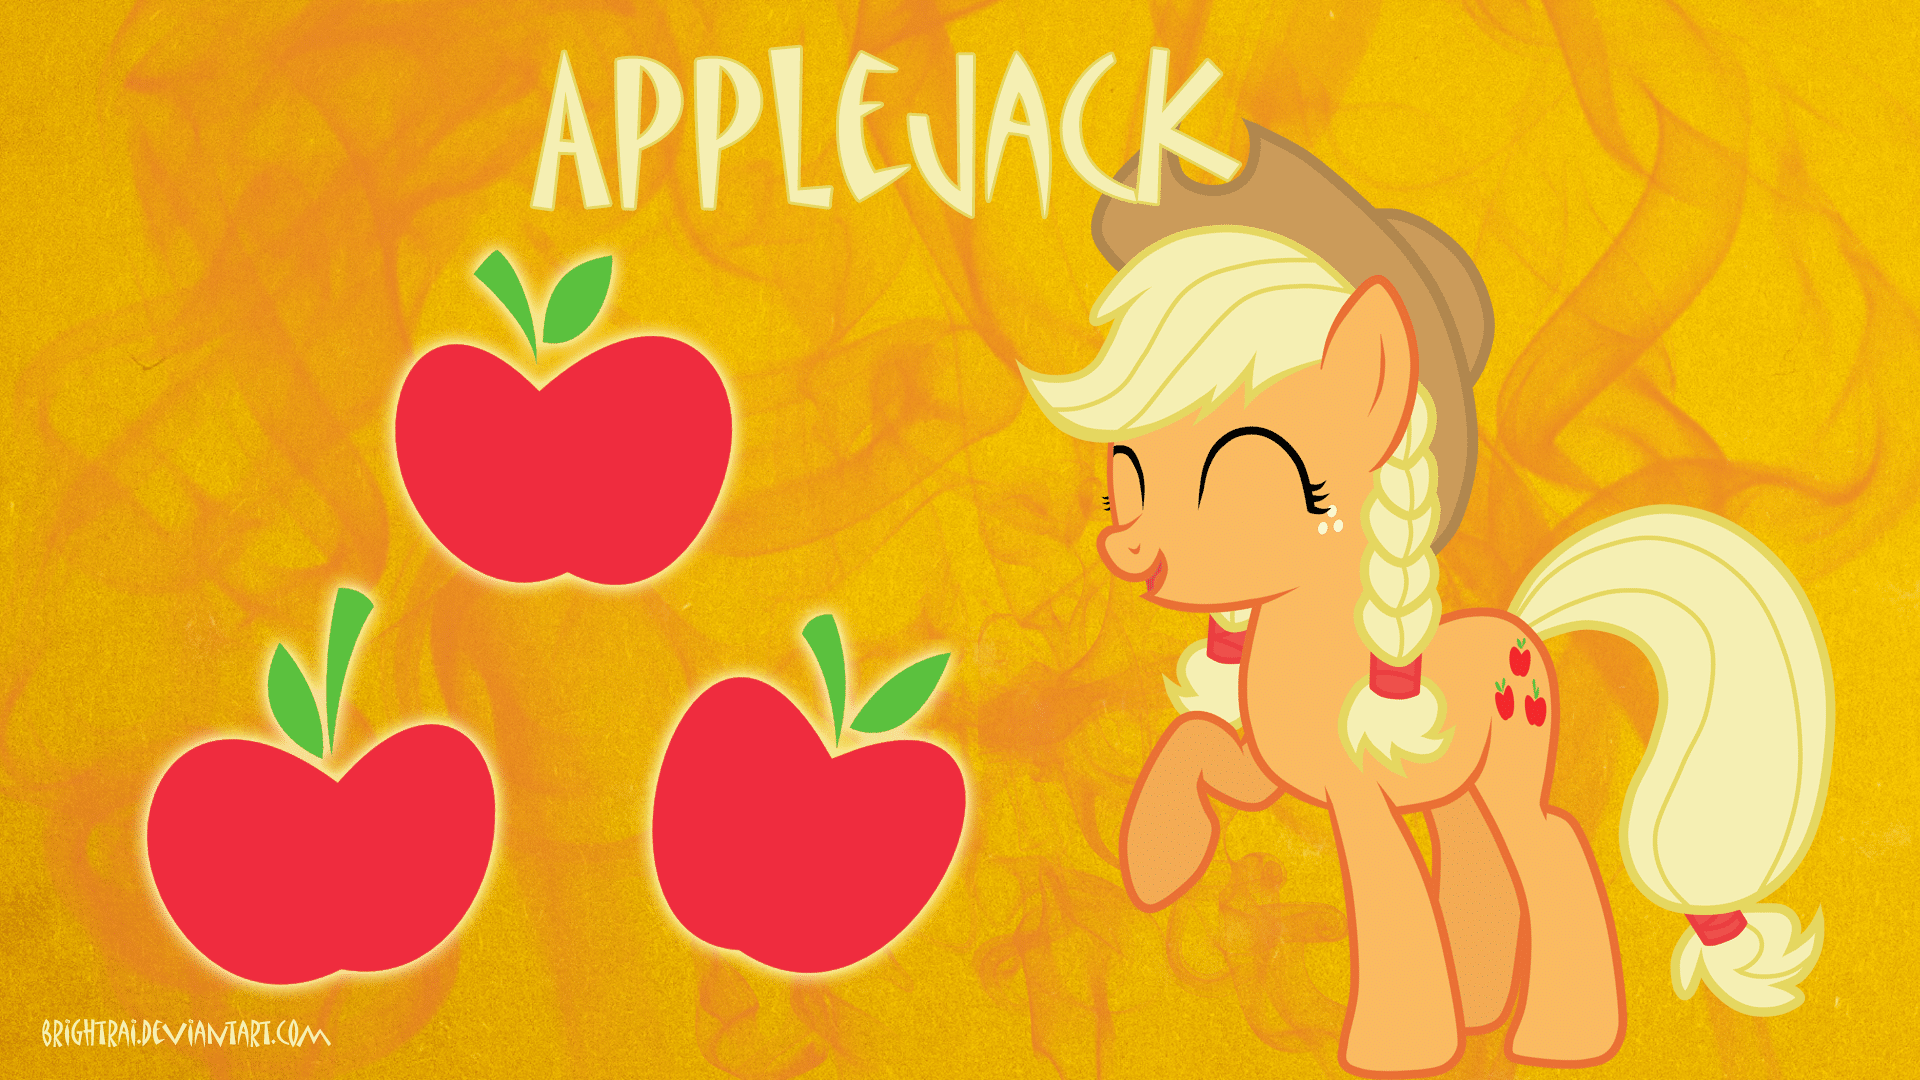 applejack definition